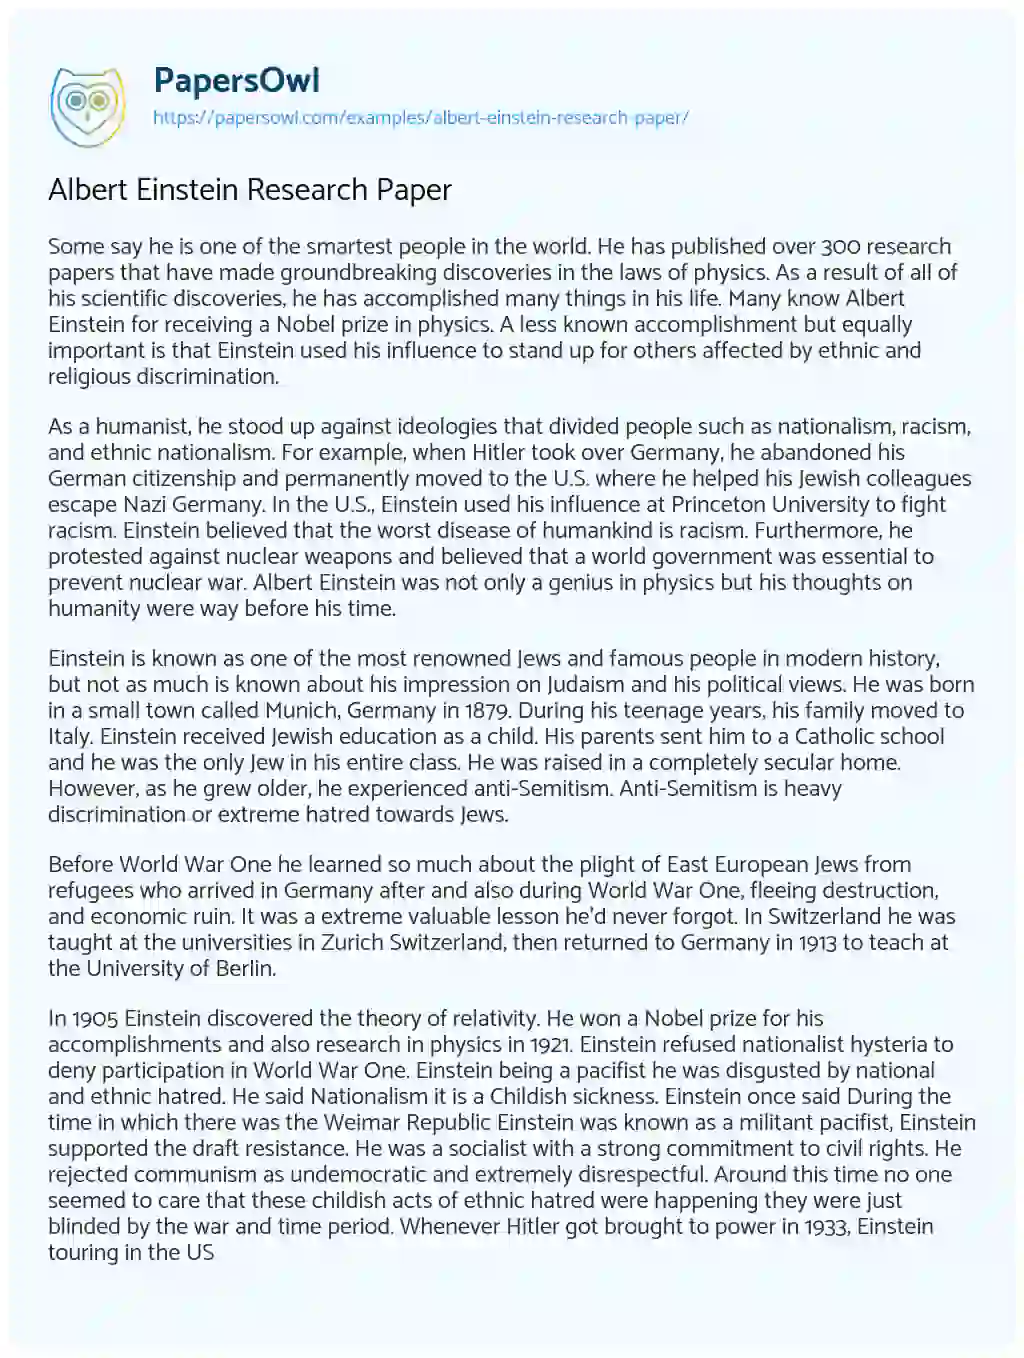 Albert Einstein Research Paper essay